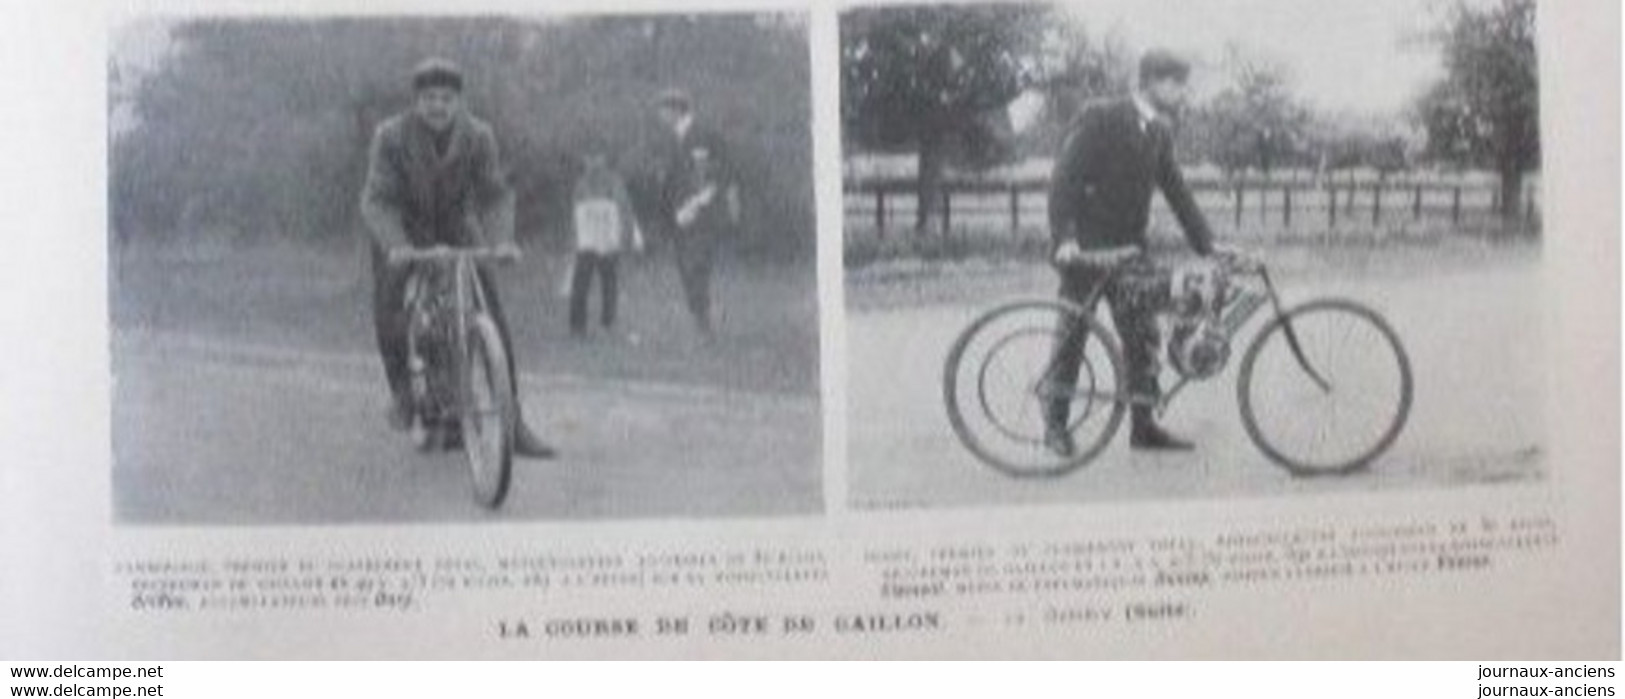 1902 GAILLON - MEETING DE COTE - CONTINENTAL - MICHELIN - LES VOITURES ET LES MOTOCYCLETTES